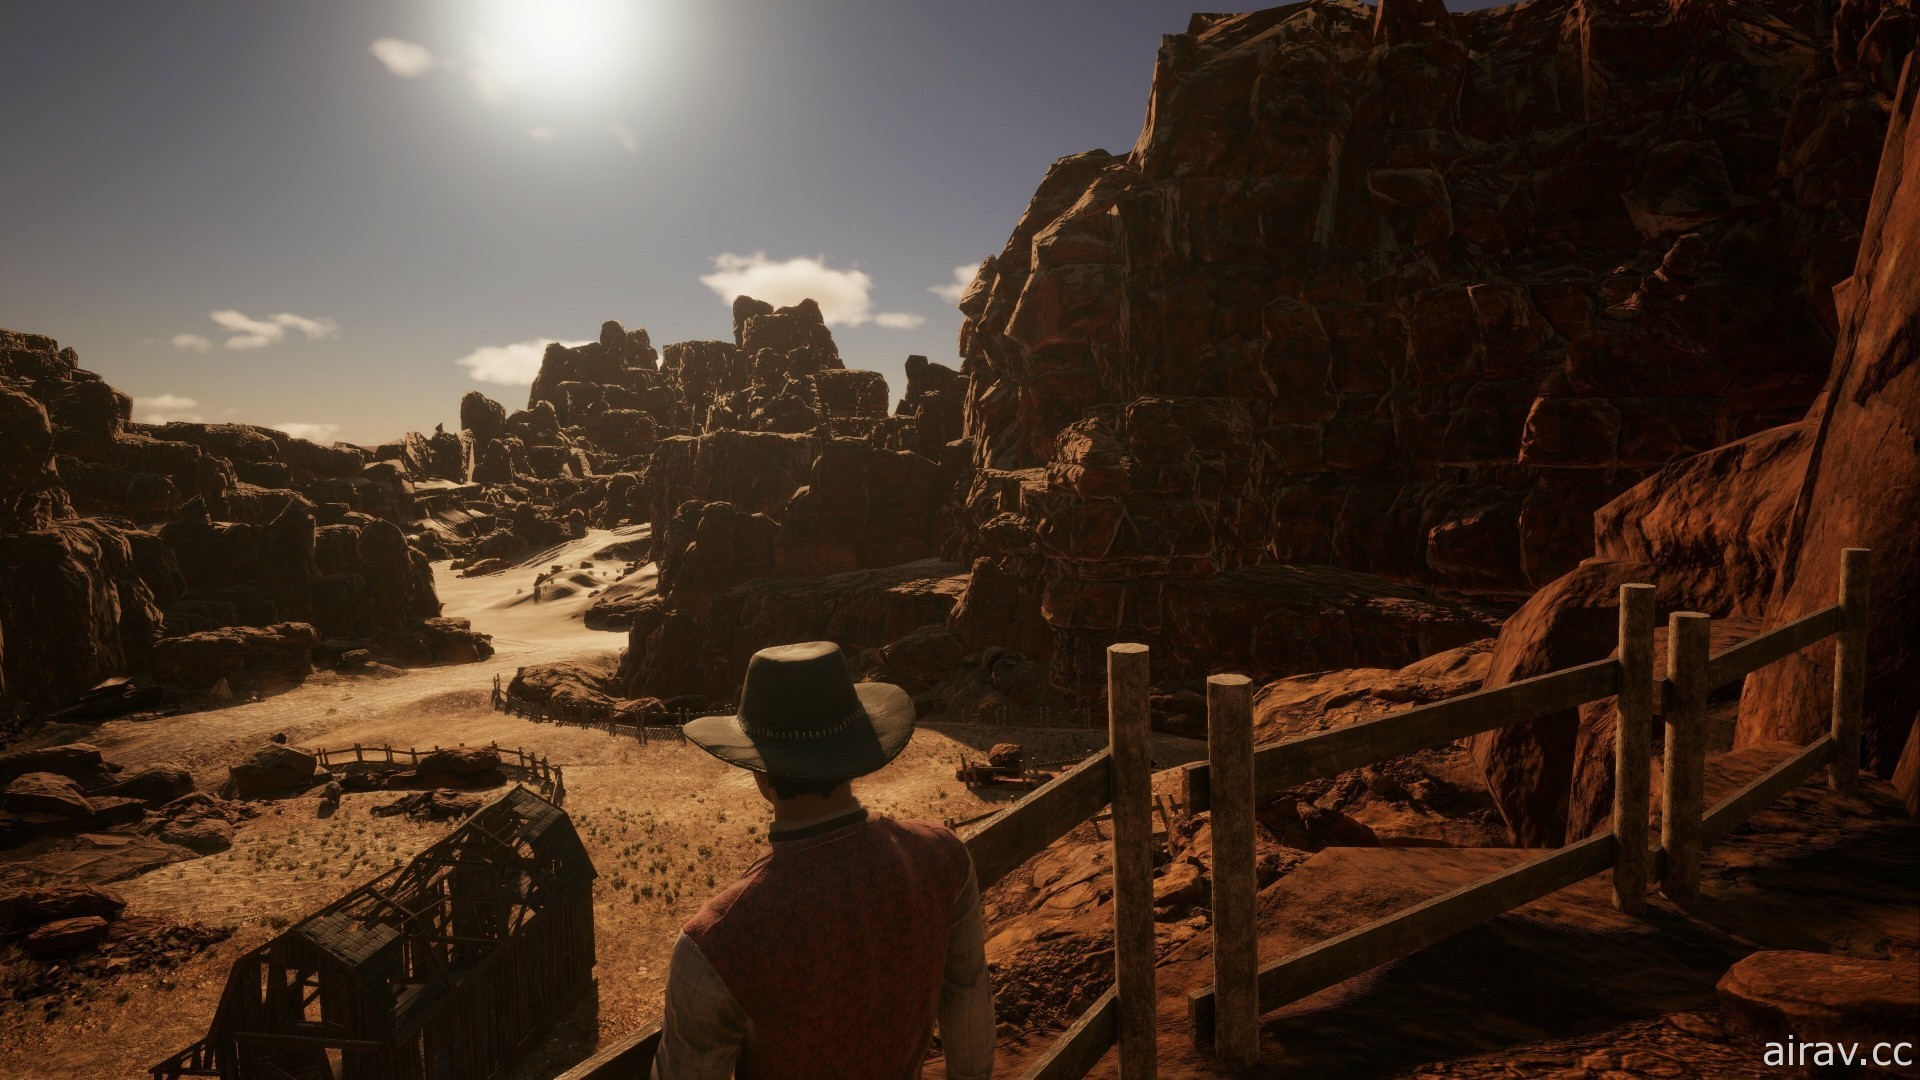 西部冒險遊戲新作《拓荒西部王朝》公開最新預告影片 復興廢棄牧場